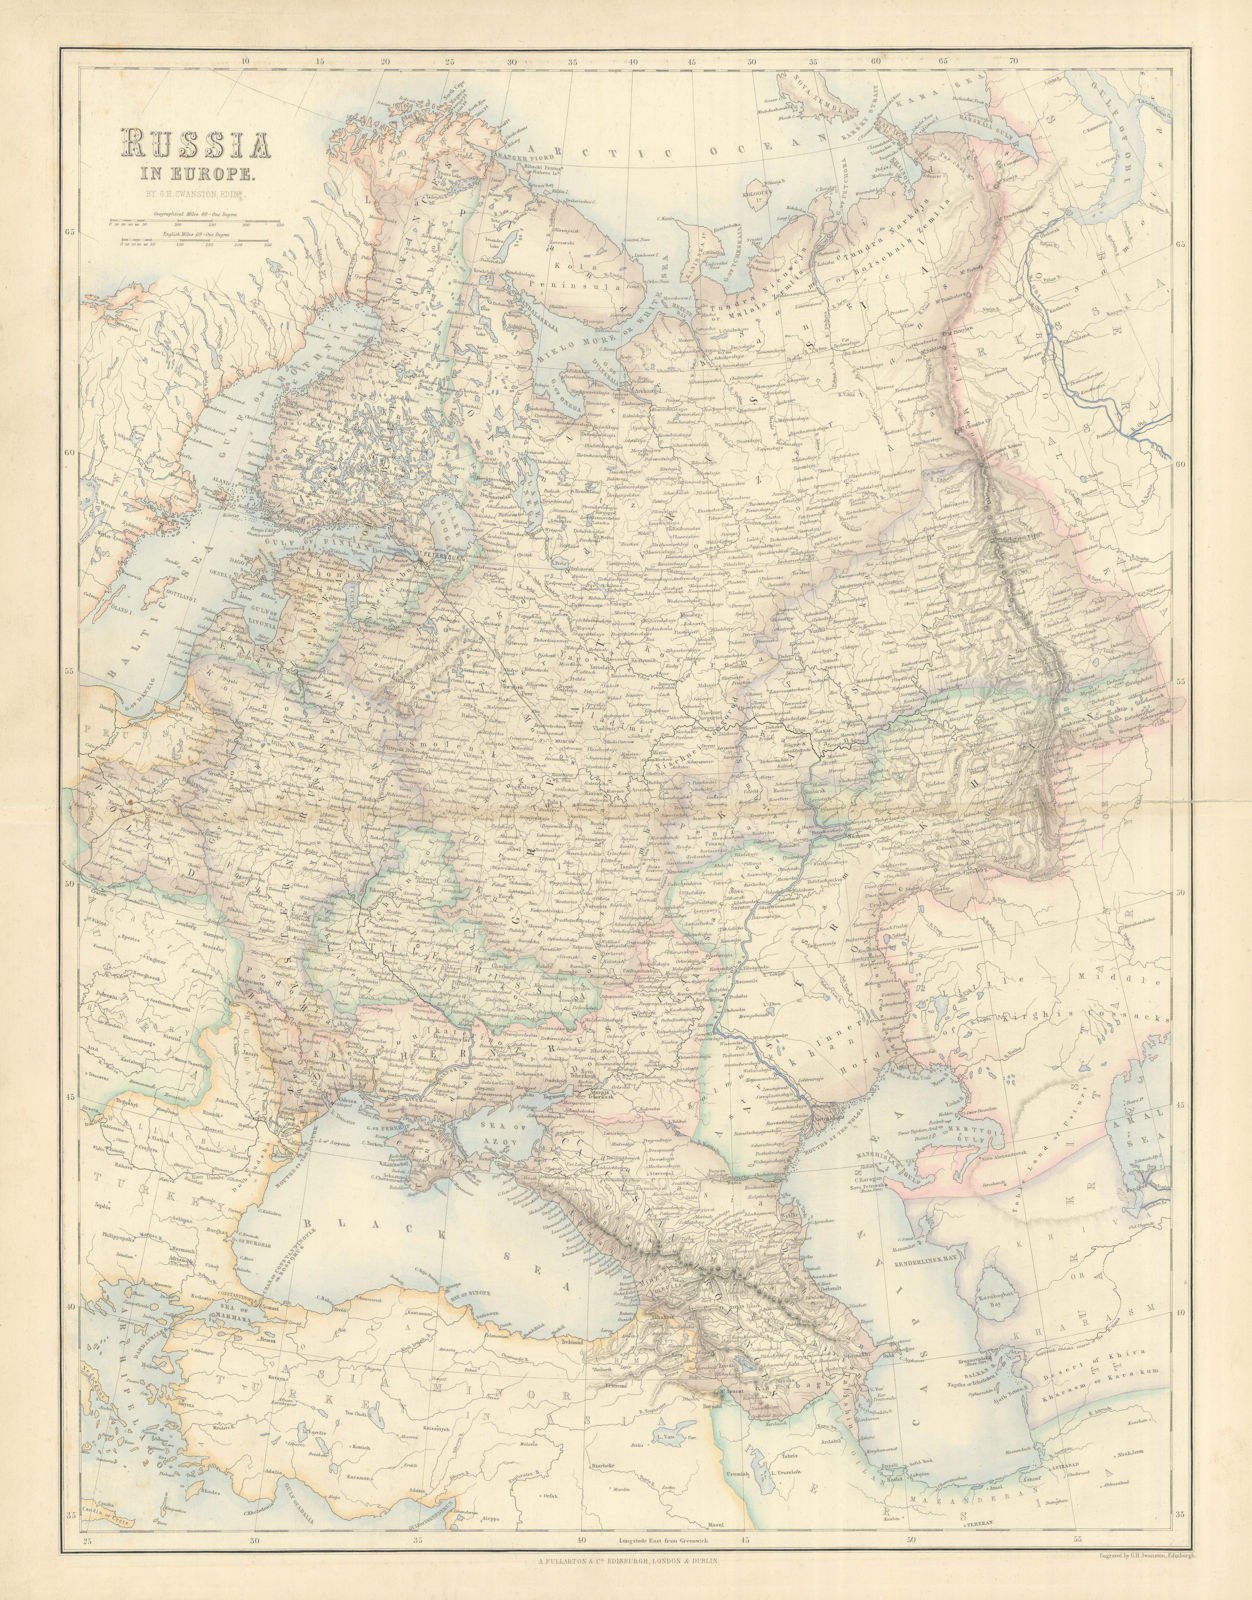 Associate Product Russia in Europe. Ukraine Caucasus Finland Poland Baltics. SWANSTON 1860 map